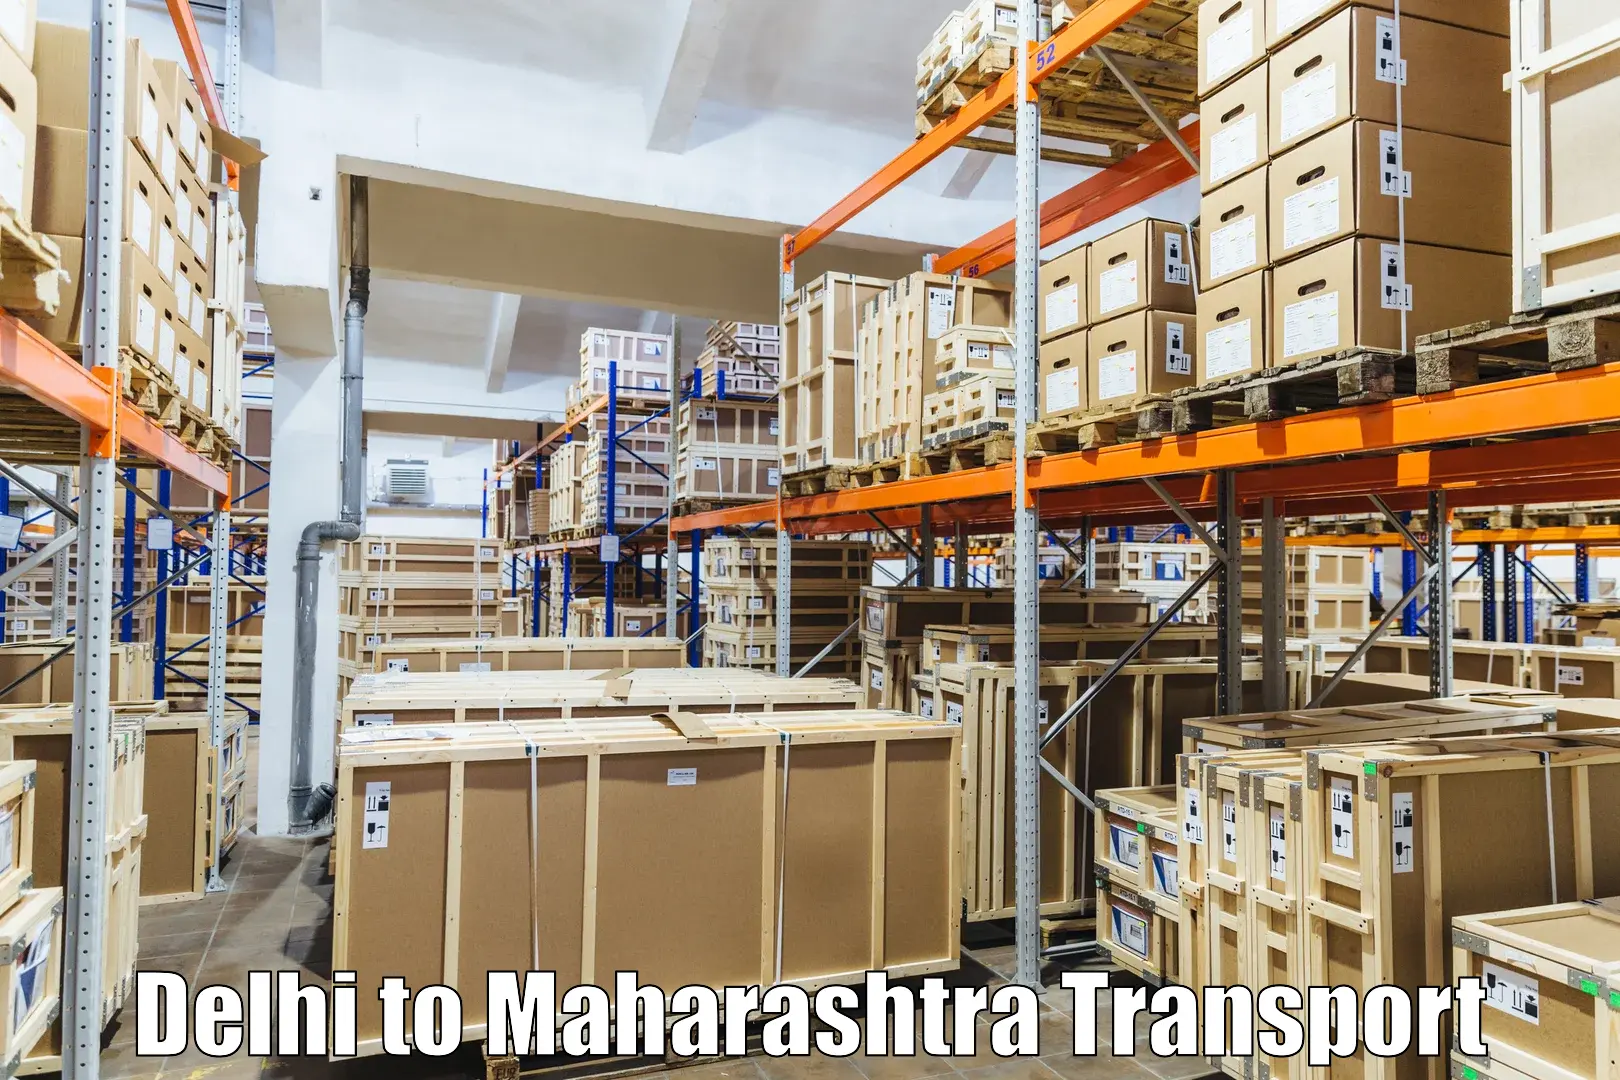 Furniture transport service Delhi to Walchandnagar